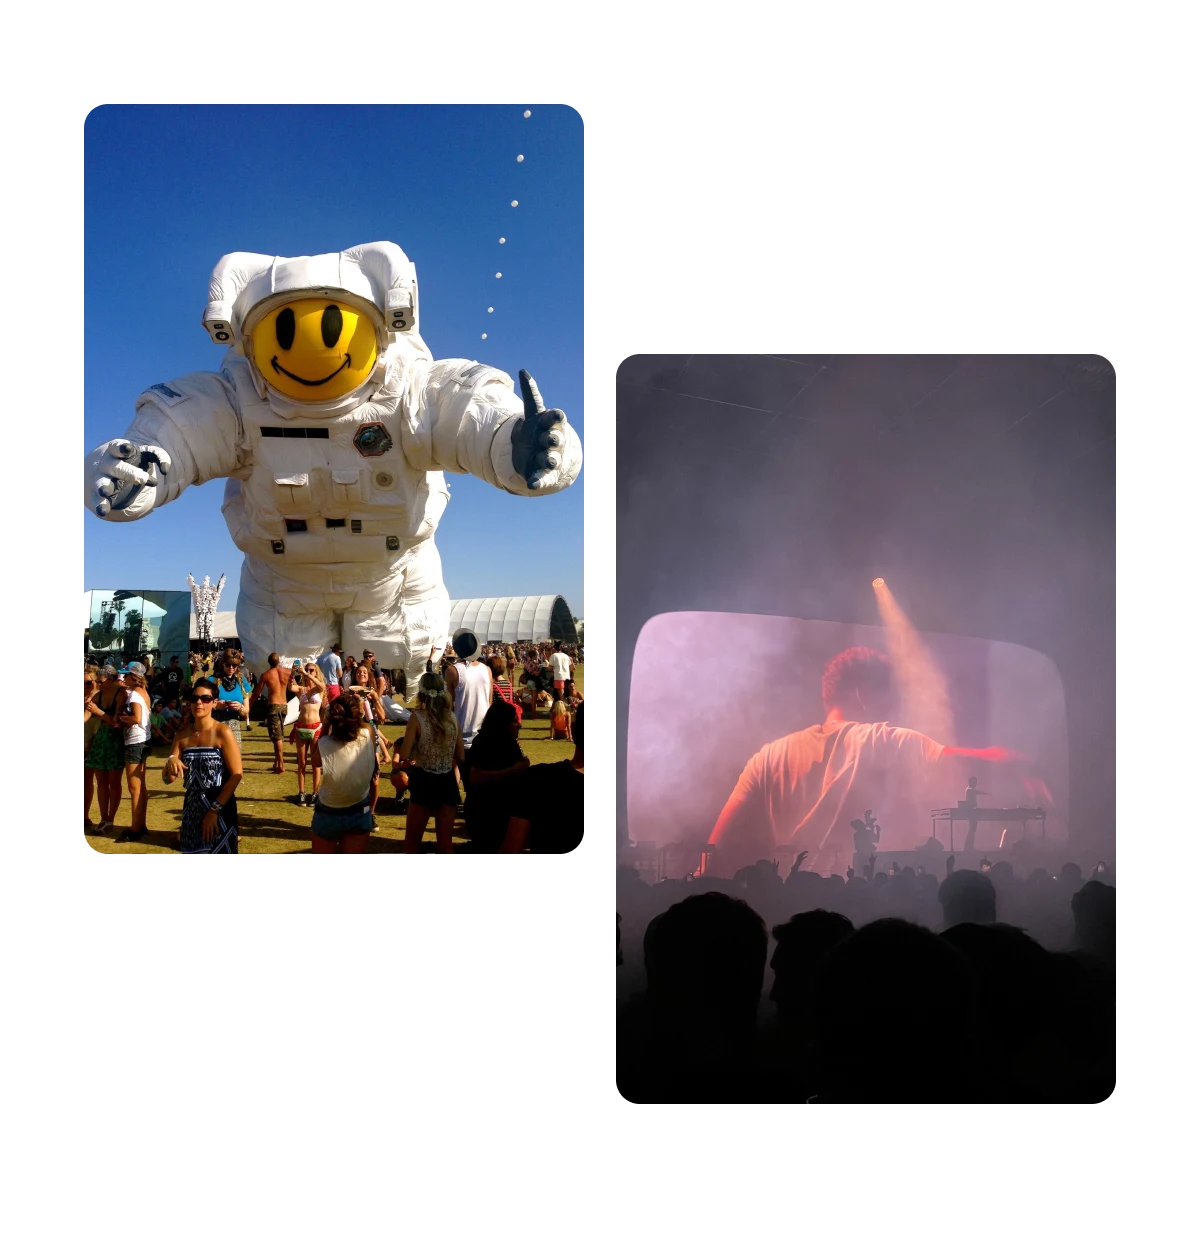 Dois Pins, astronauta inflável em um festival de música, Dj tocando em um show